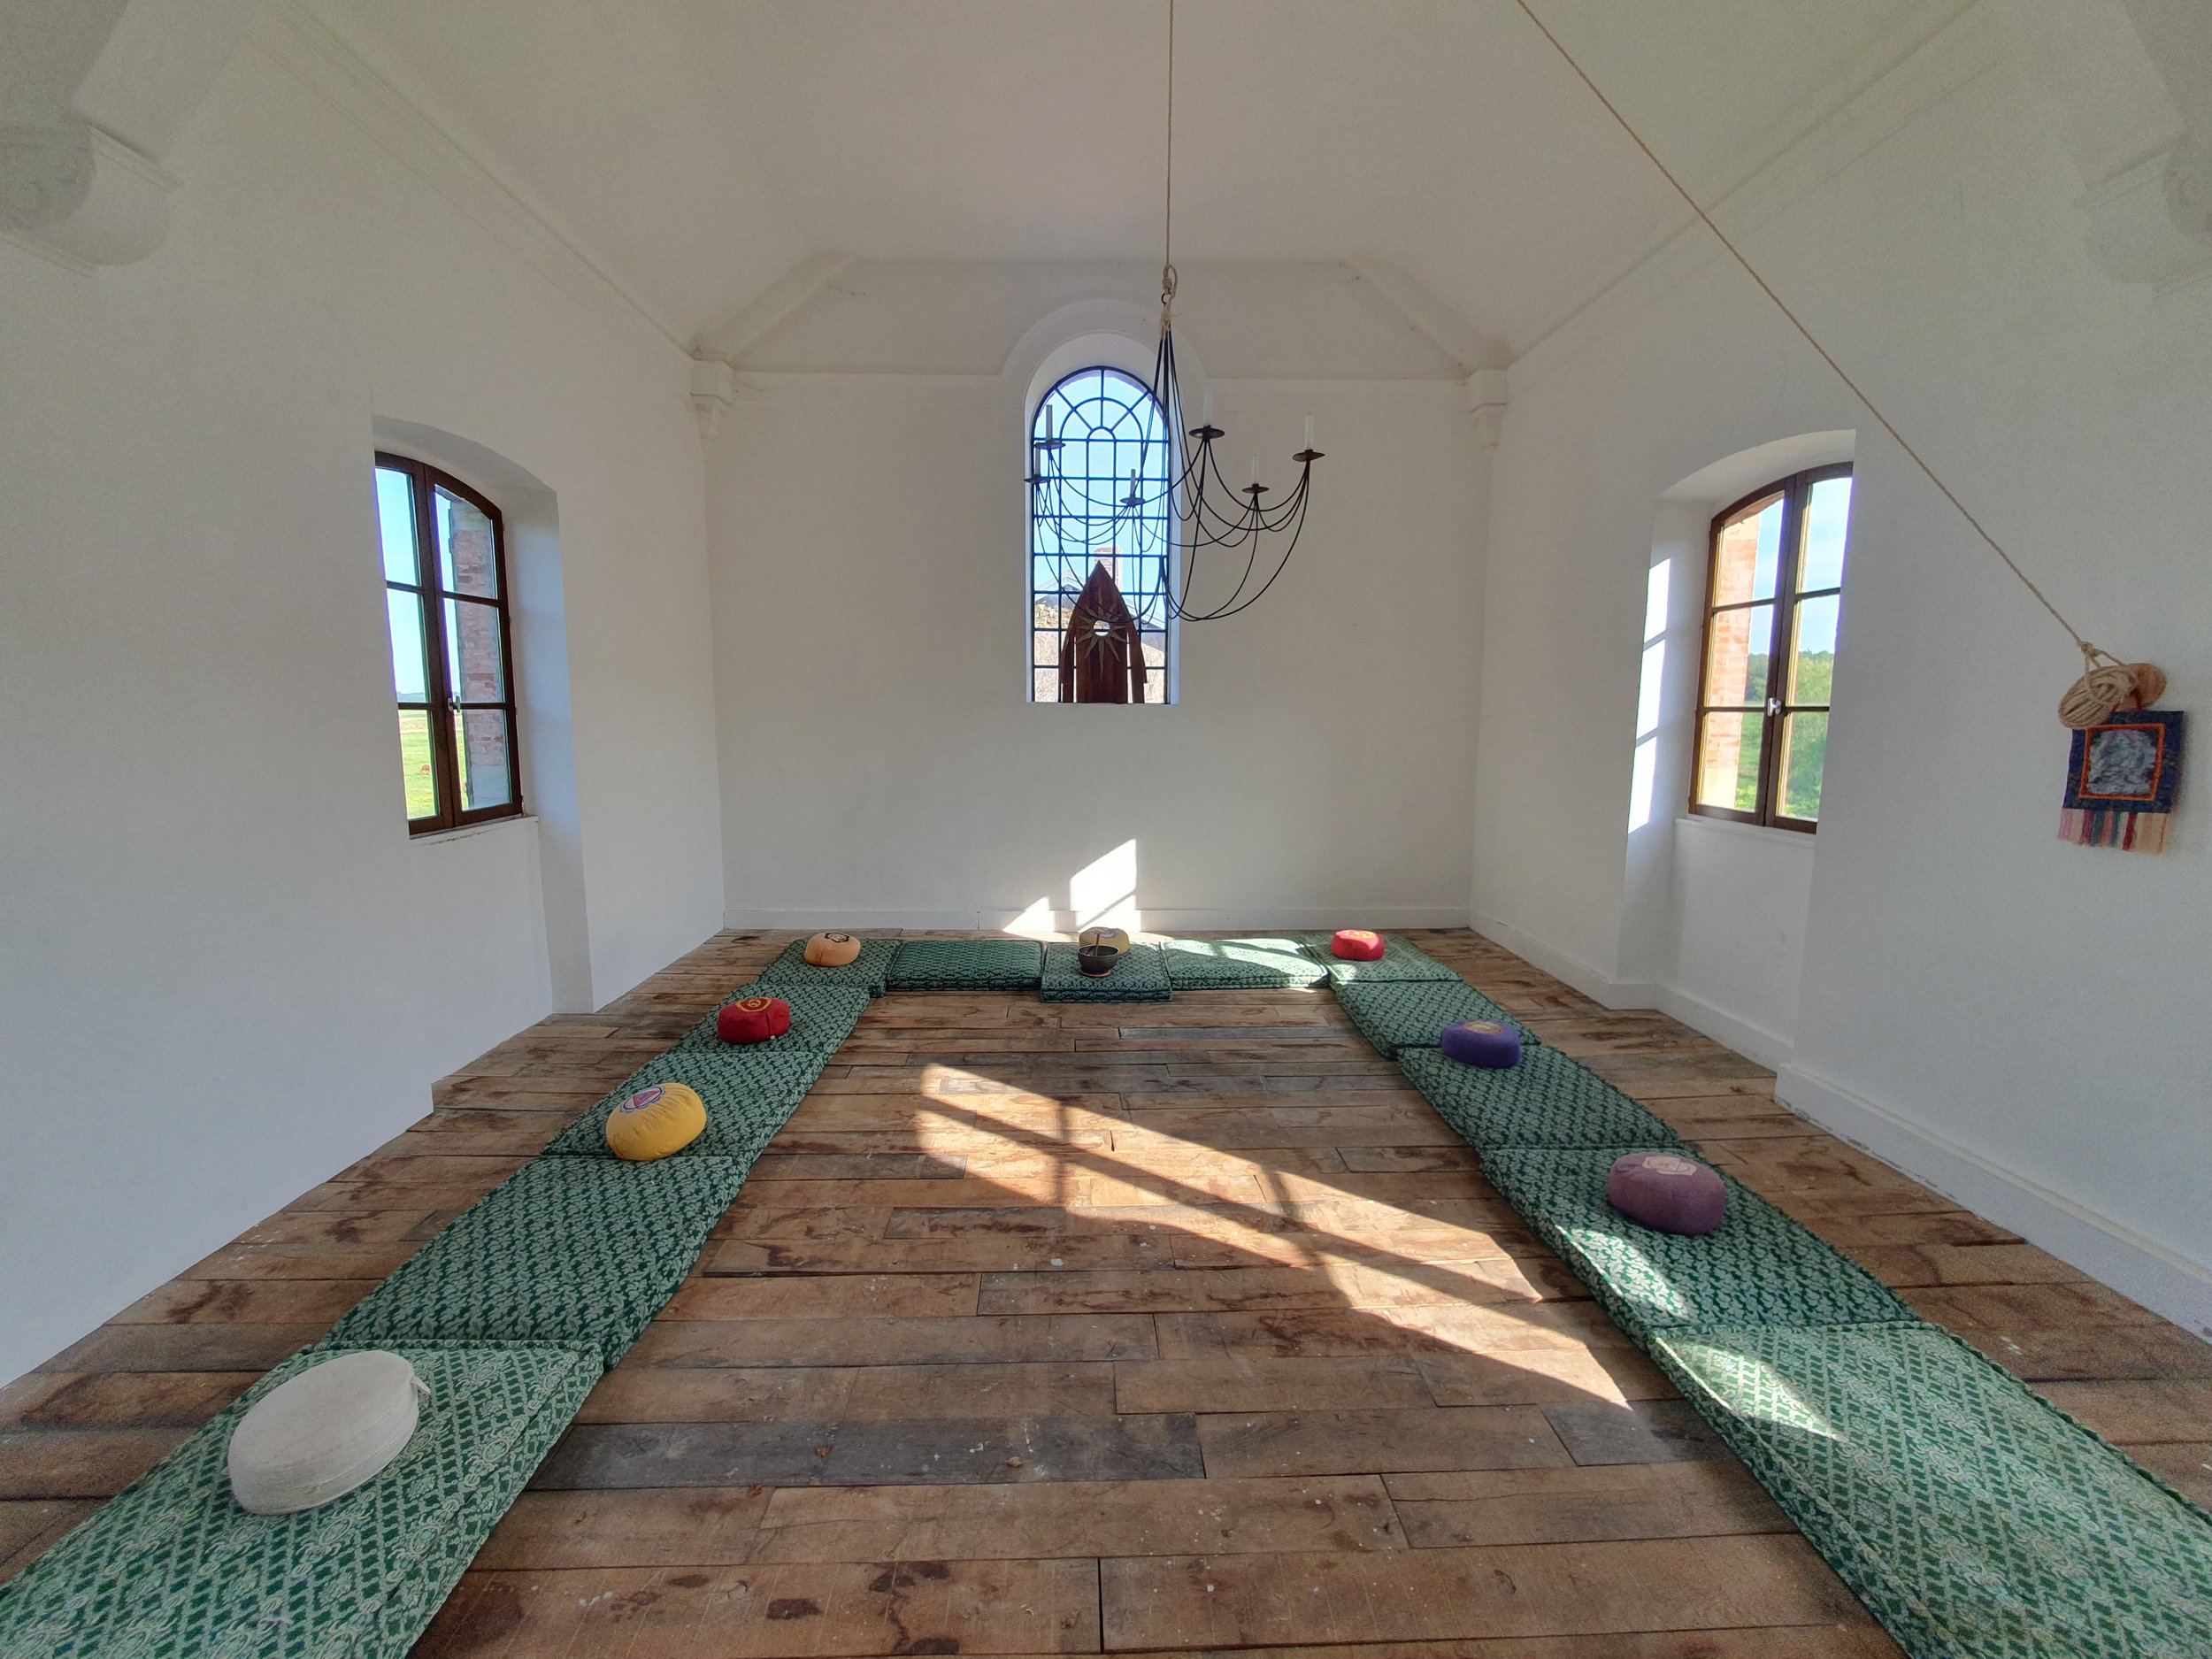  A meditation chapel